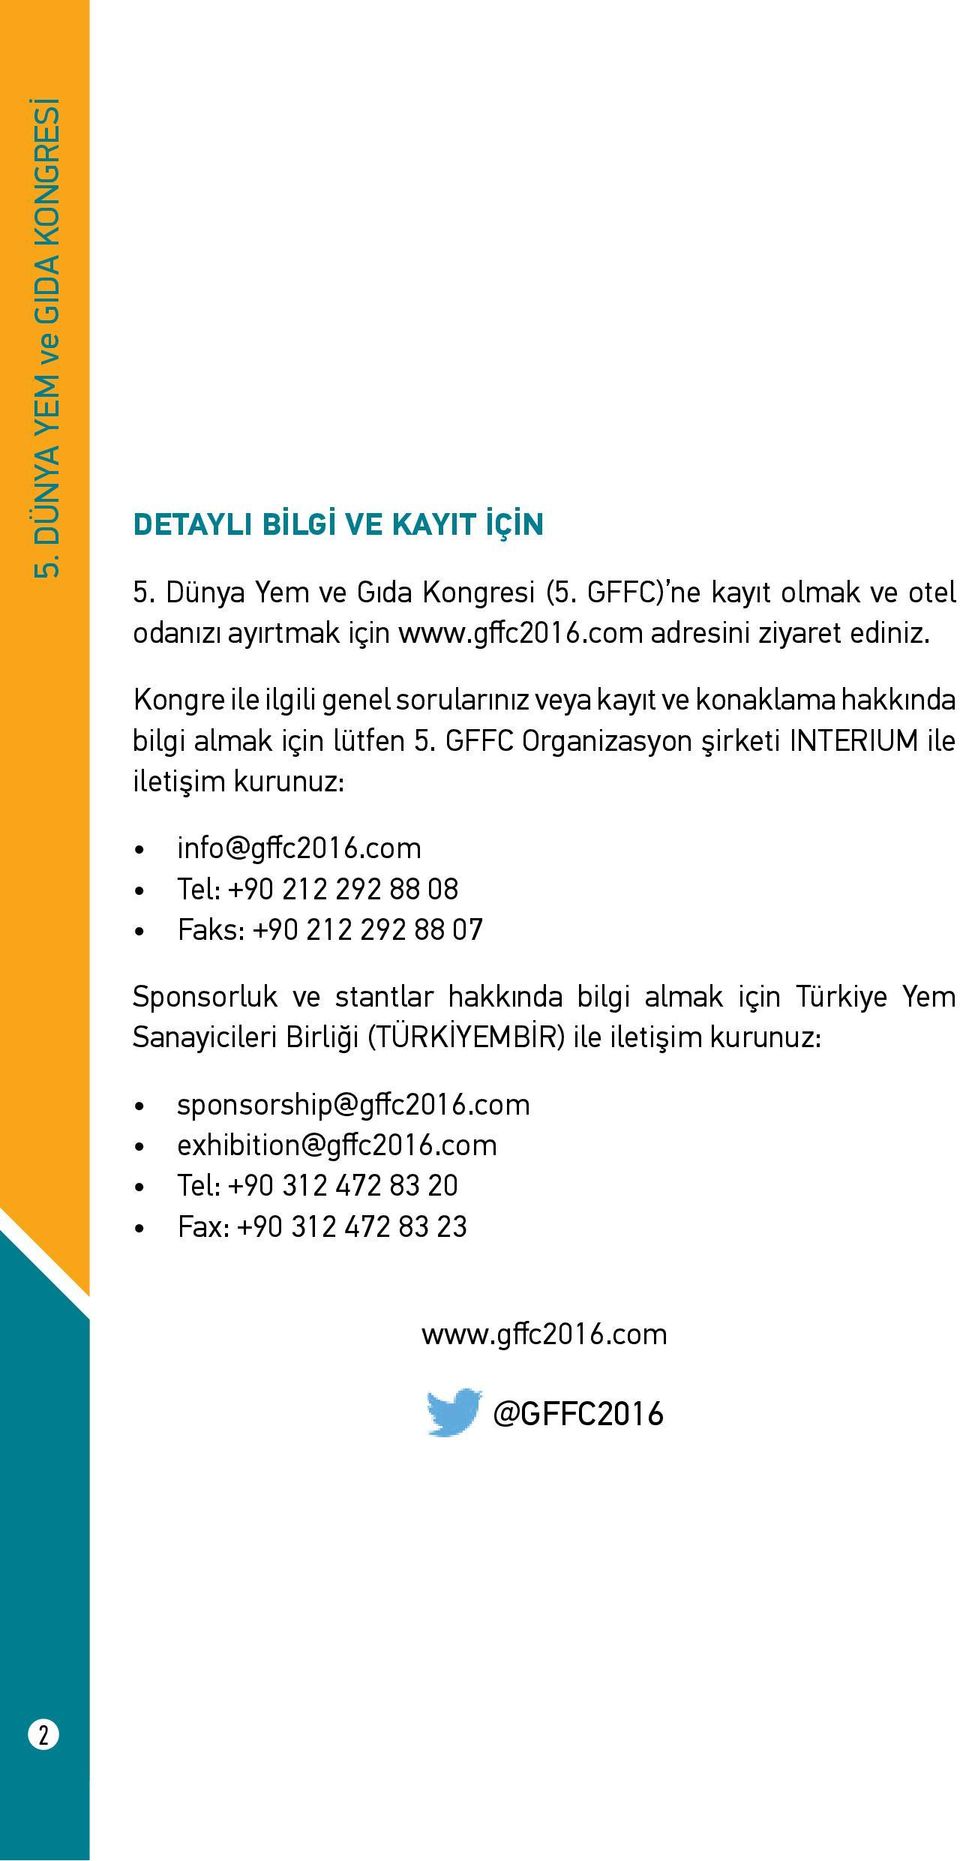 GFFC Organizasyon şirketi INTERIUM ile iletişim kurunuz: info@gffc2016.